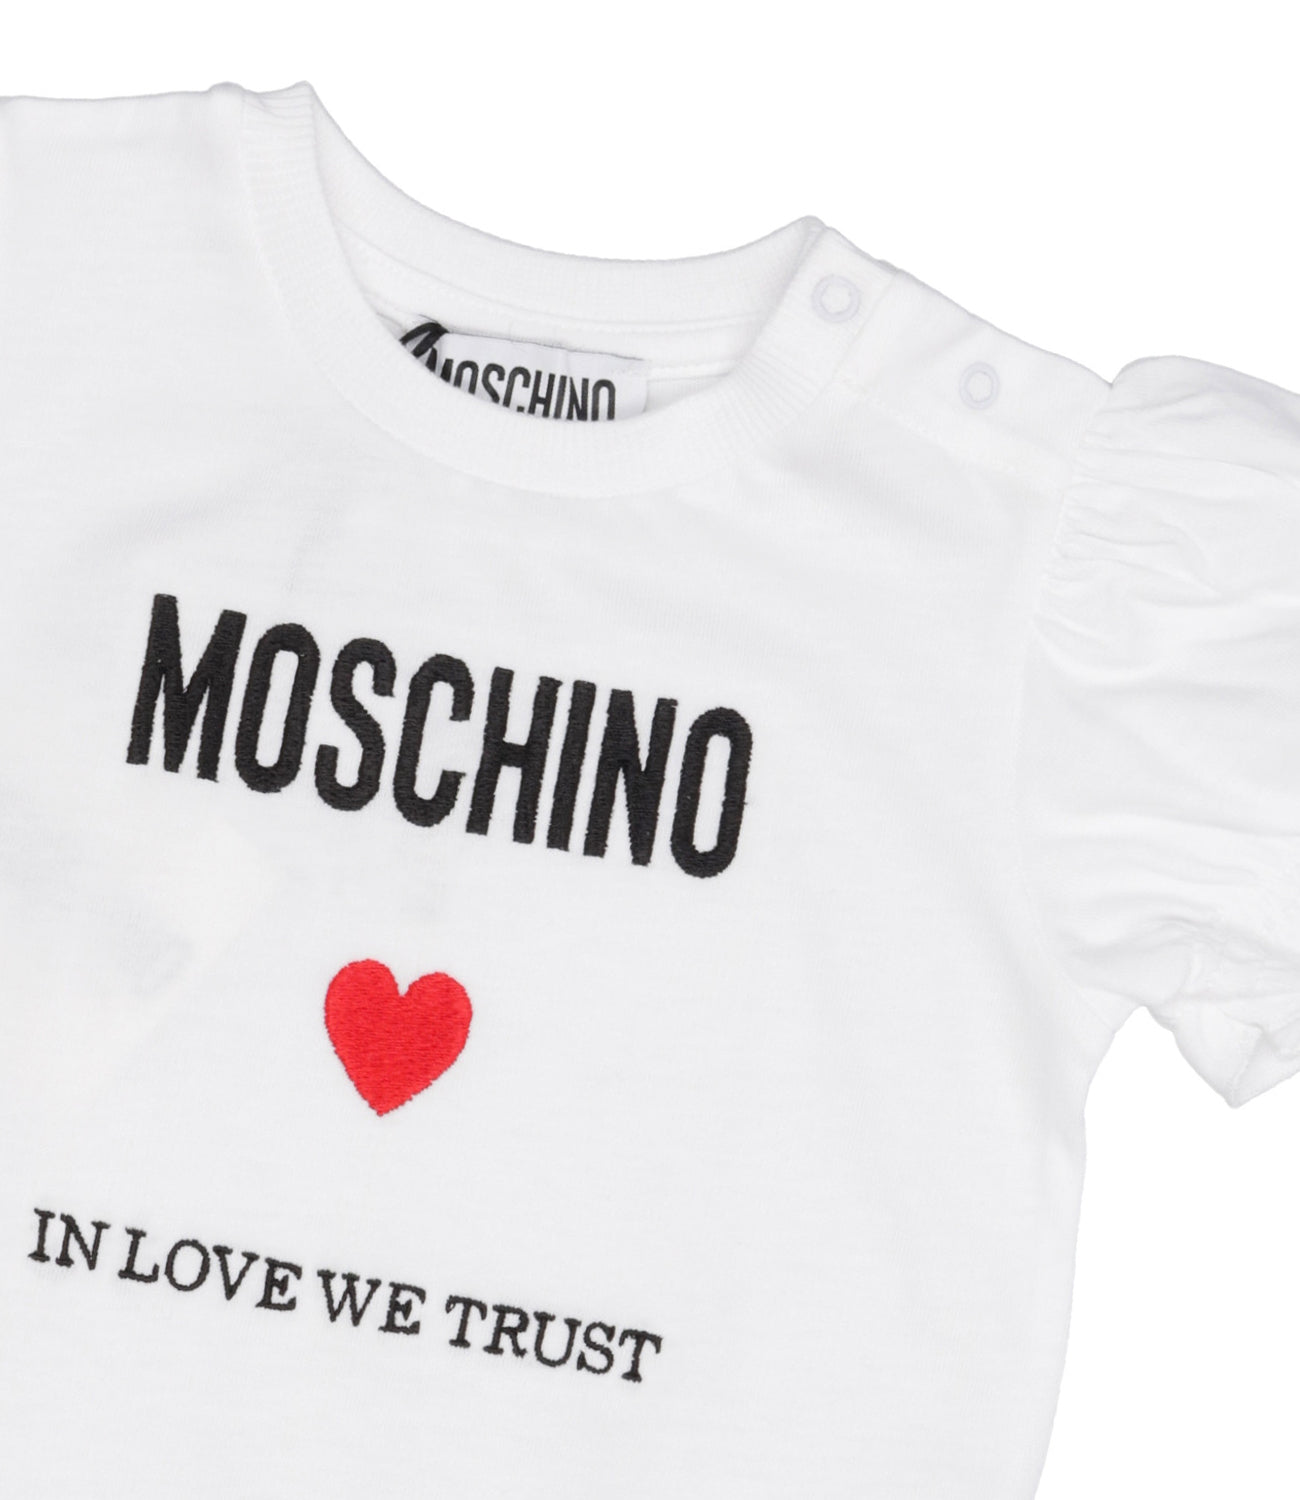 Moschino Baby | Tutina Bianco